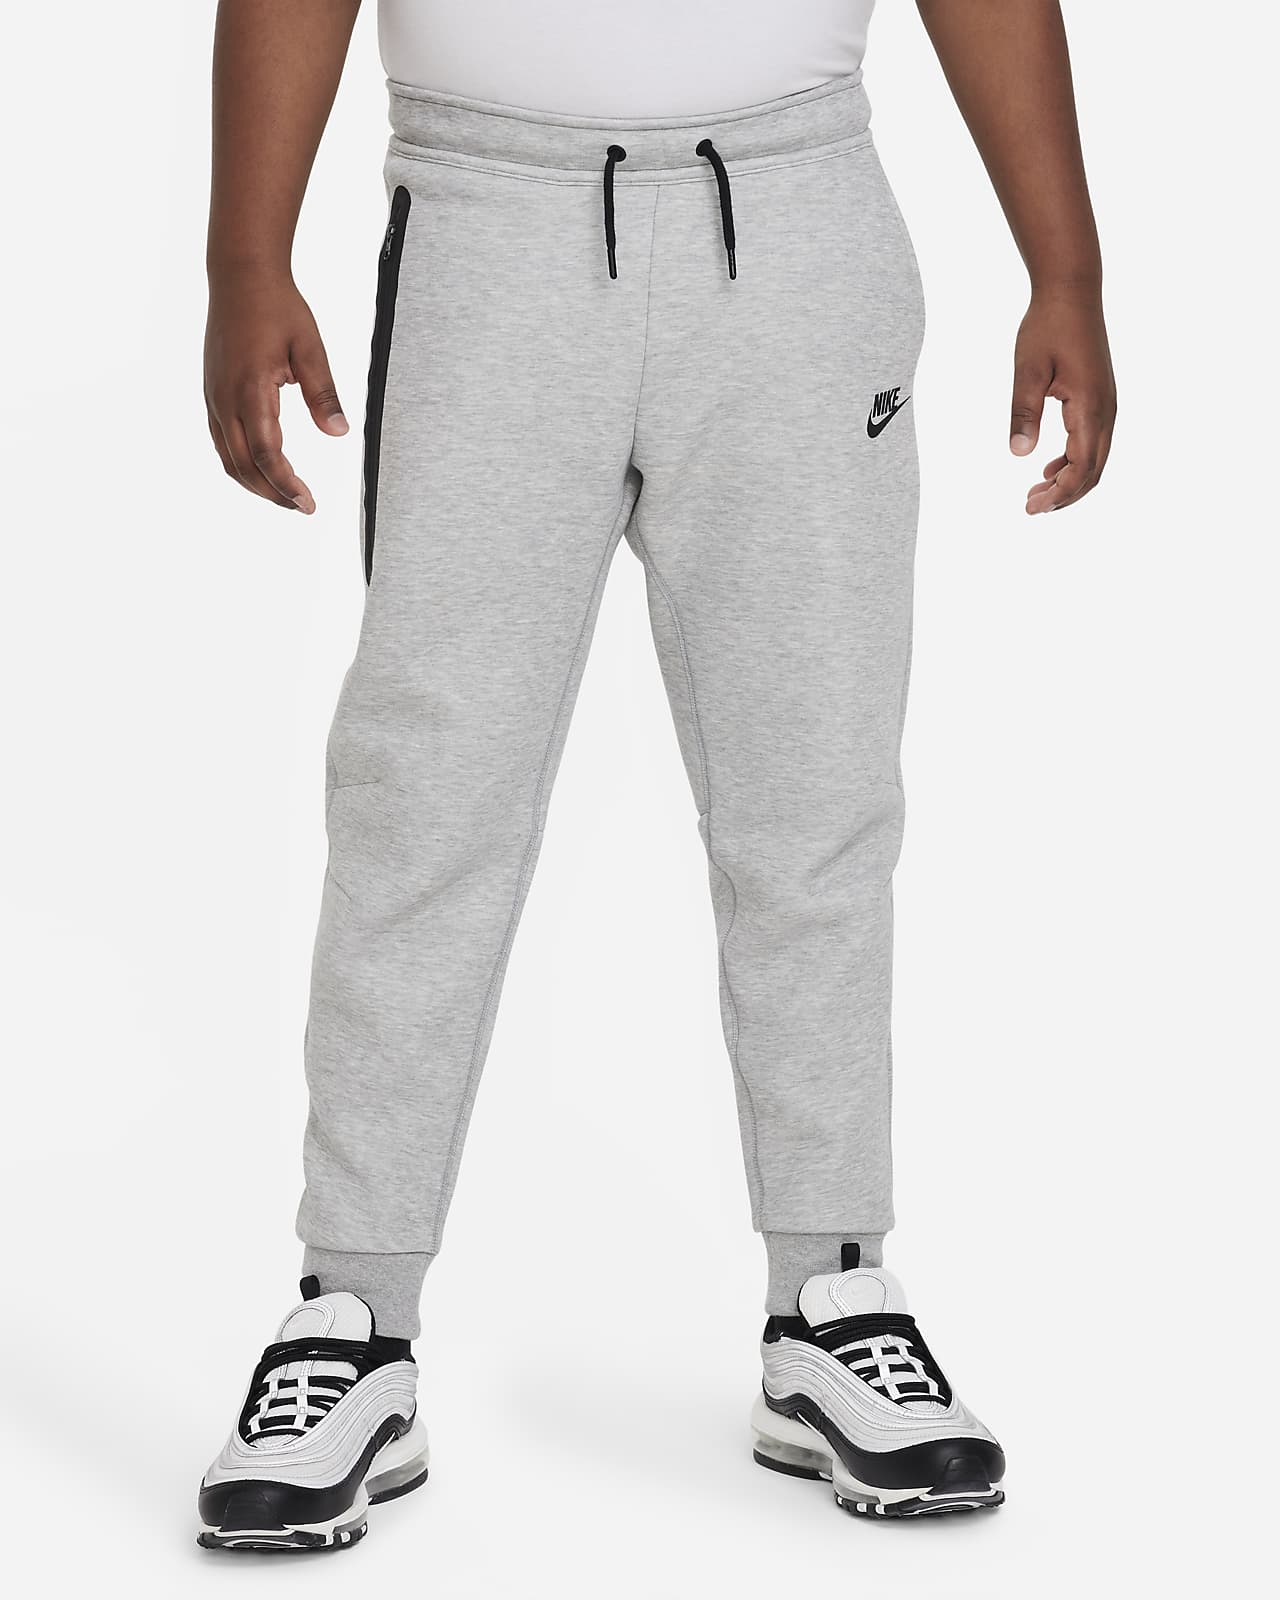 Spodnie dla dużych dzieci (chłopców) Nike Sportswear Tech Fleece (szersze rozmiary)